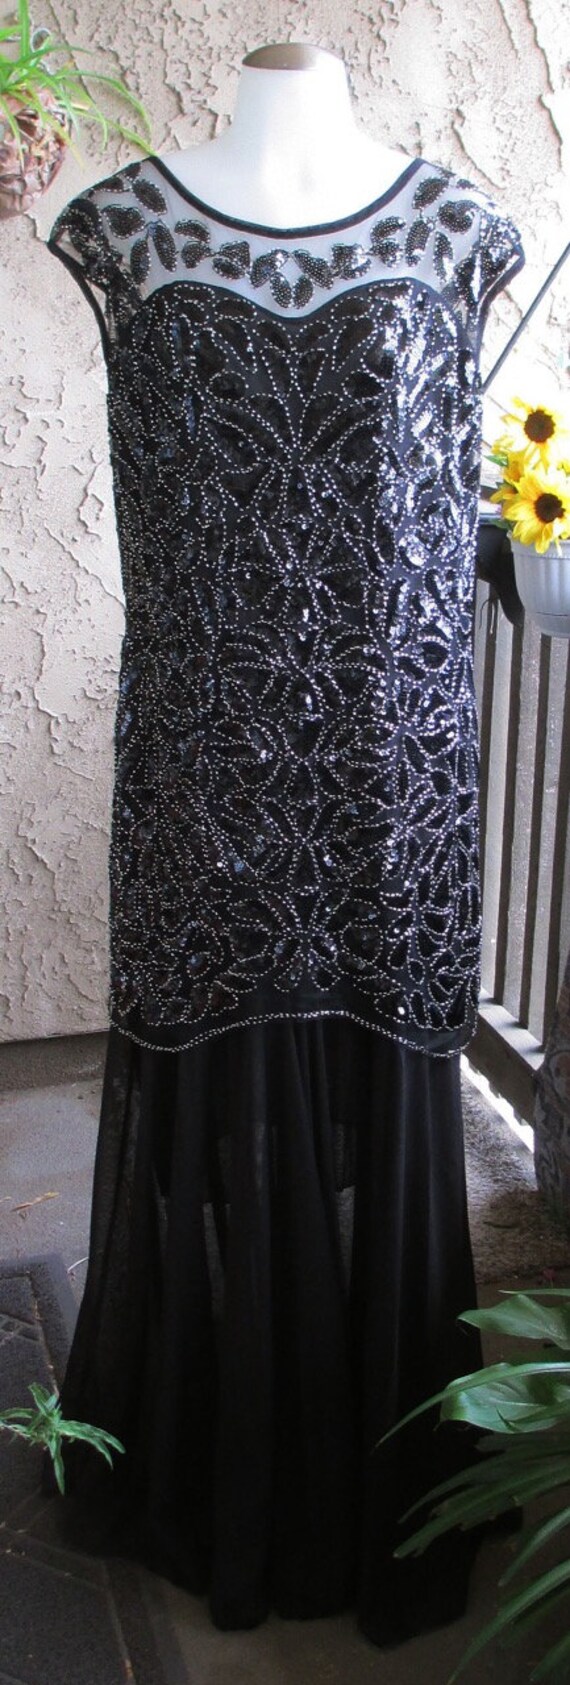 Formal Black Sequin Dress / Full Length / Black E… - image 3